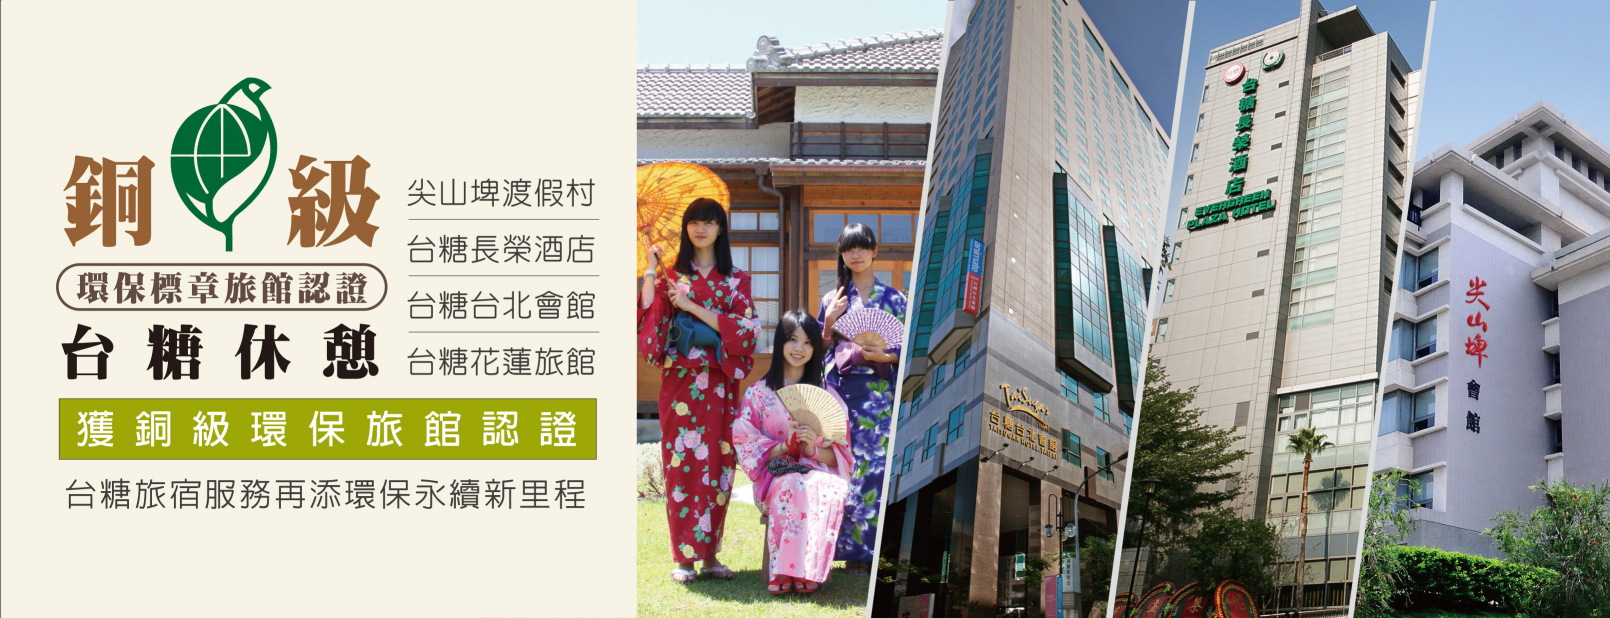 台糖環保旅館再+2，旗下台北會館、花蓮旅館獲銅級認證